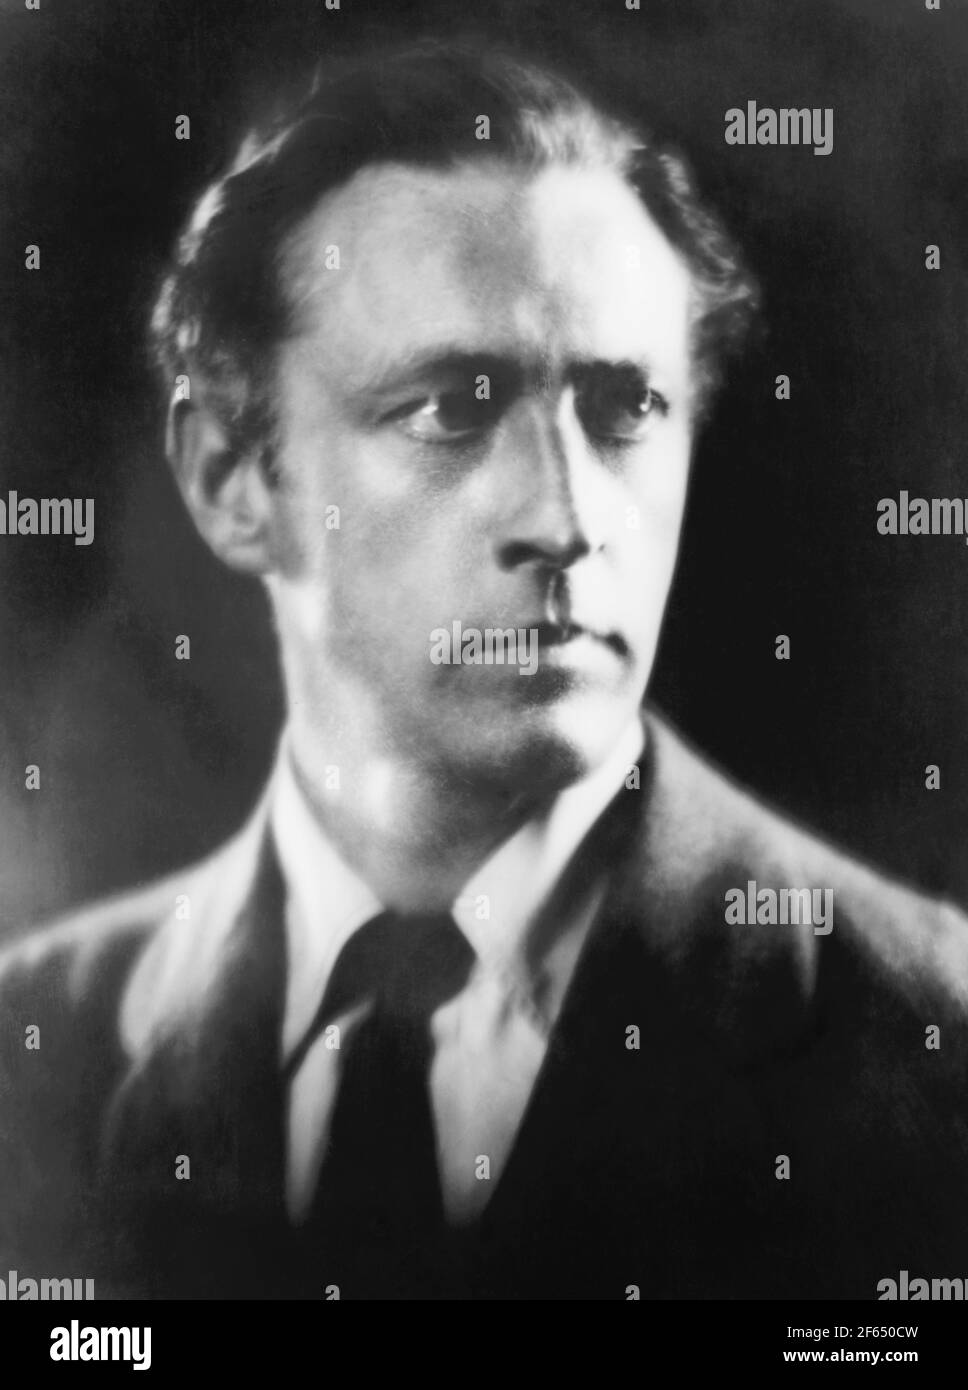 Vintage-Portraitfoto des amerikanischen Schauspielers John Barrymore (1882 – 1942). Foto von Arnold Genthe um 1922. Stockfoto